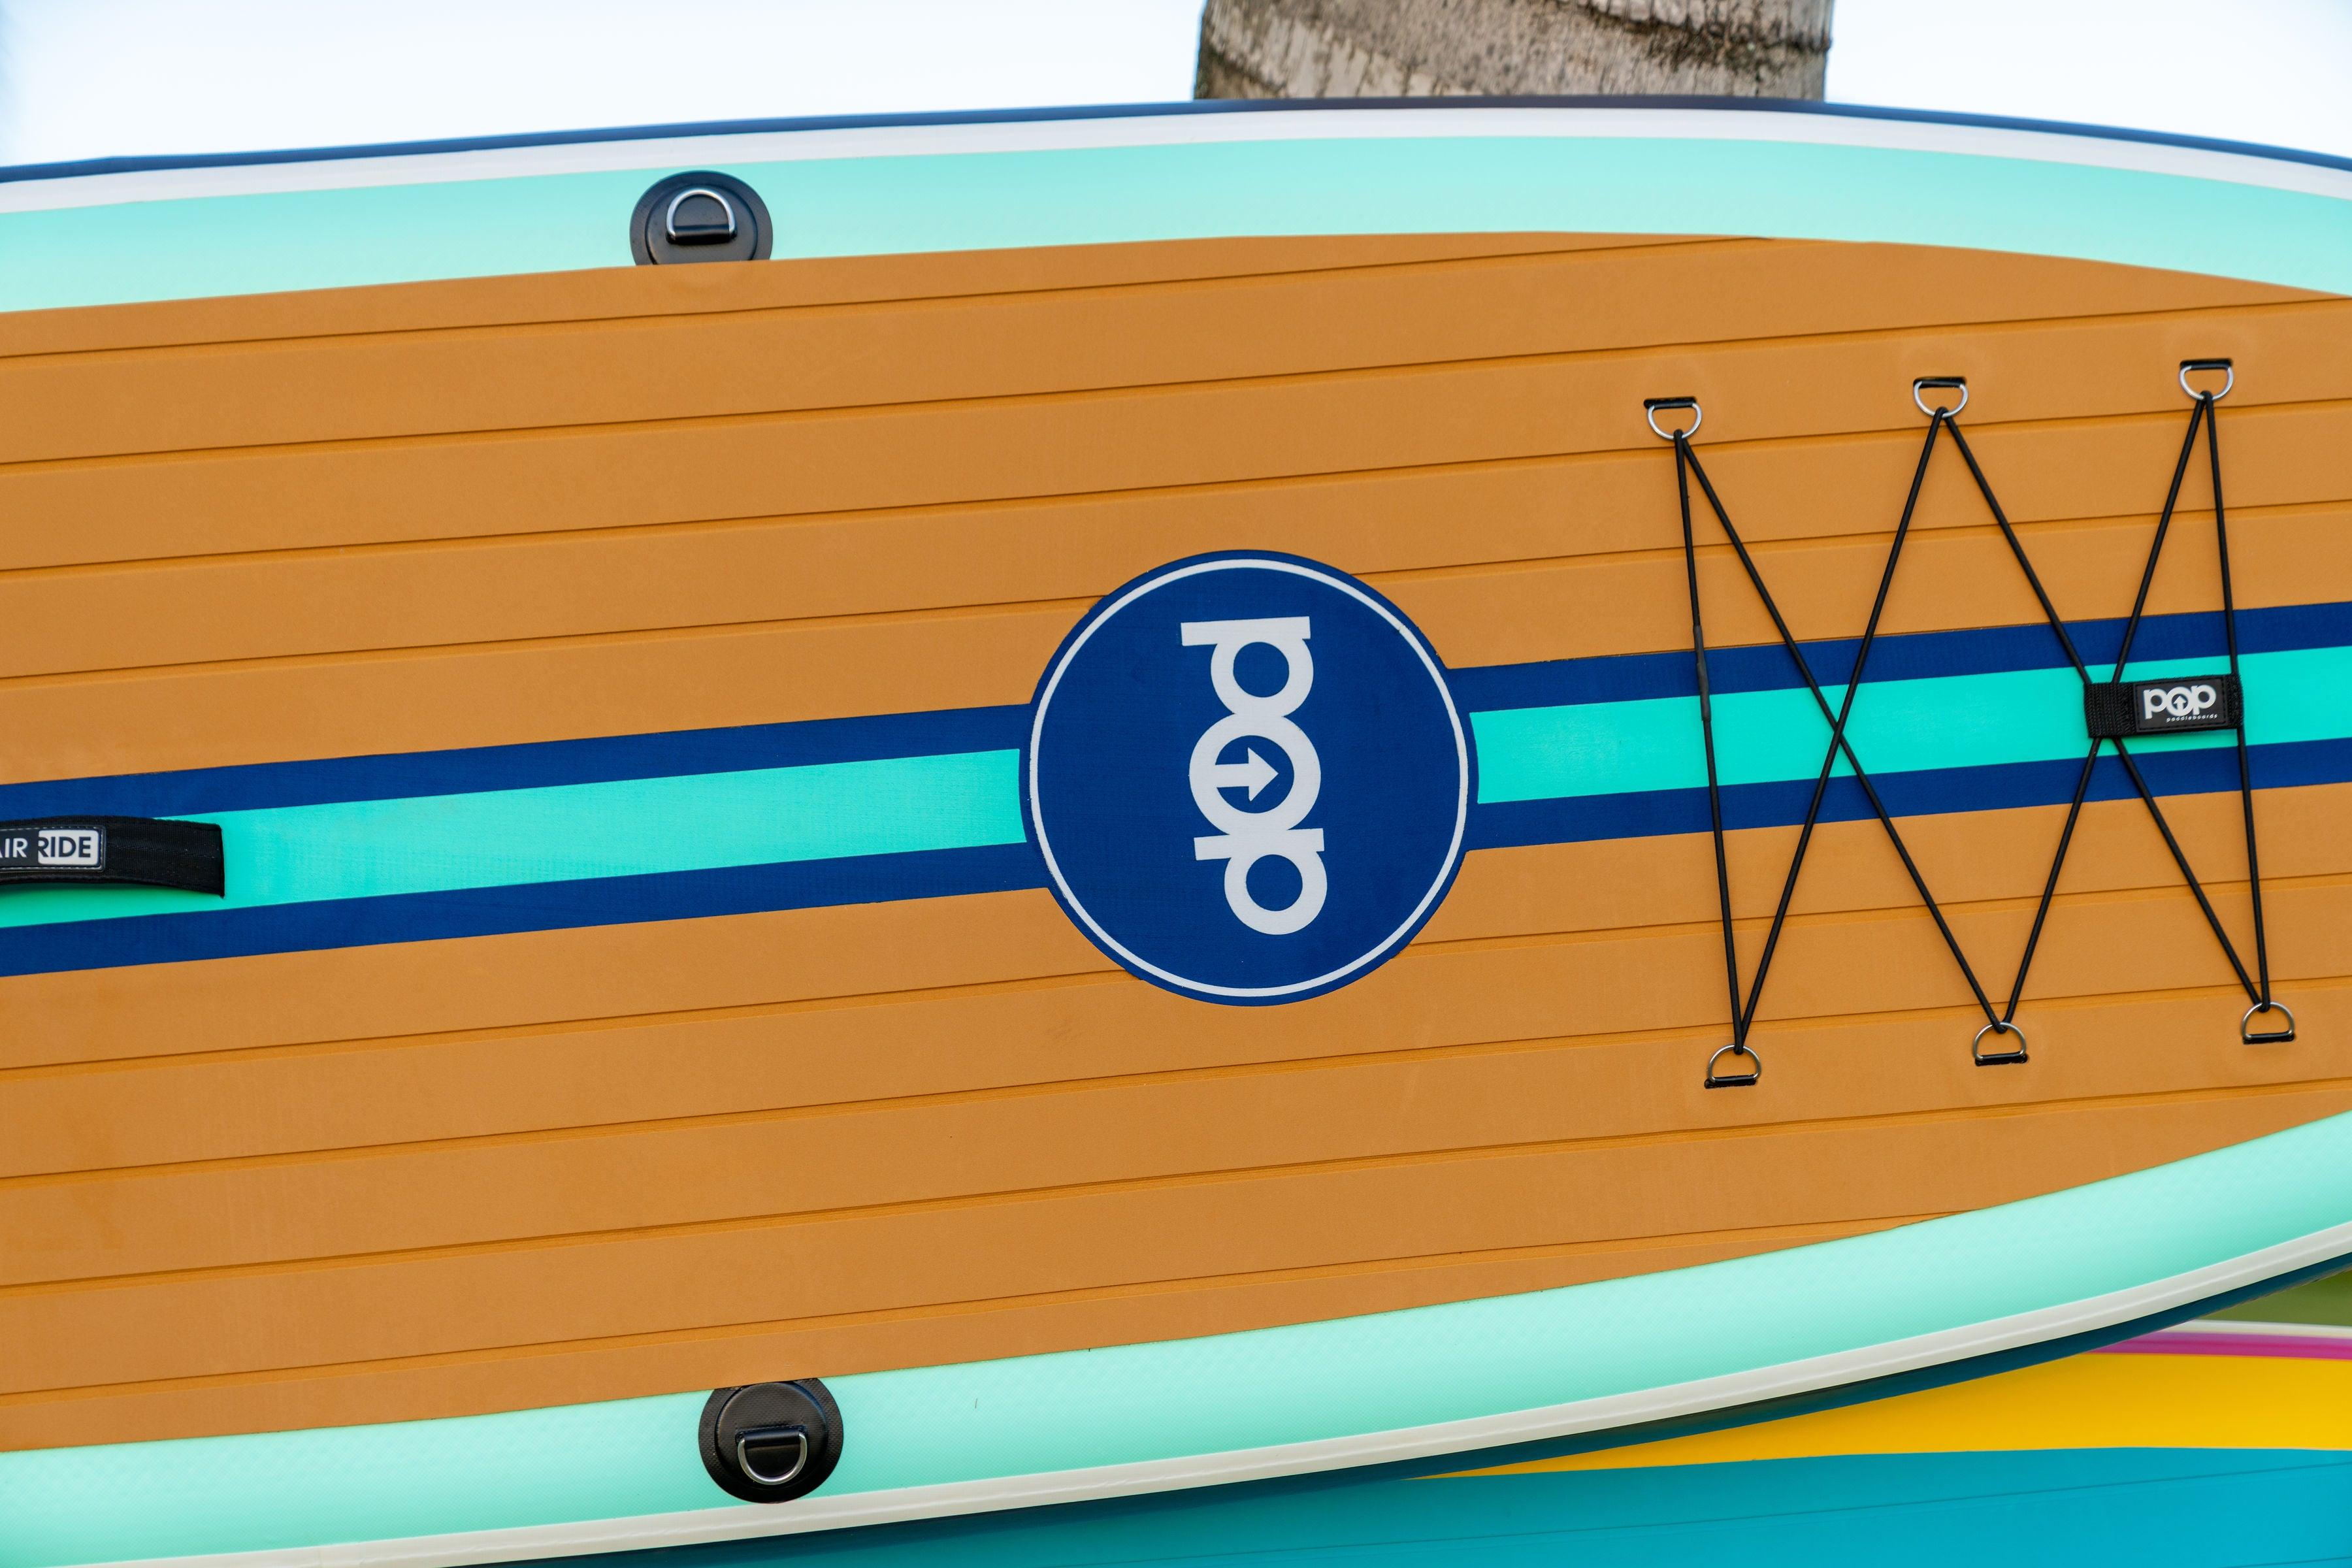 11'0 Yacht Hopper - Teak/Blue/Mint - Canadian Board Company